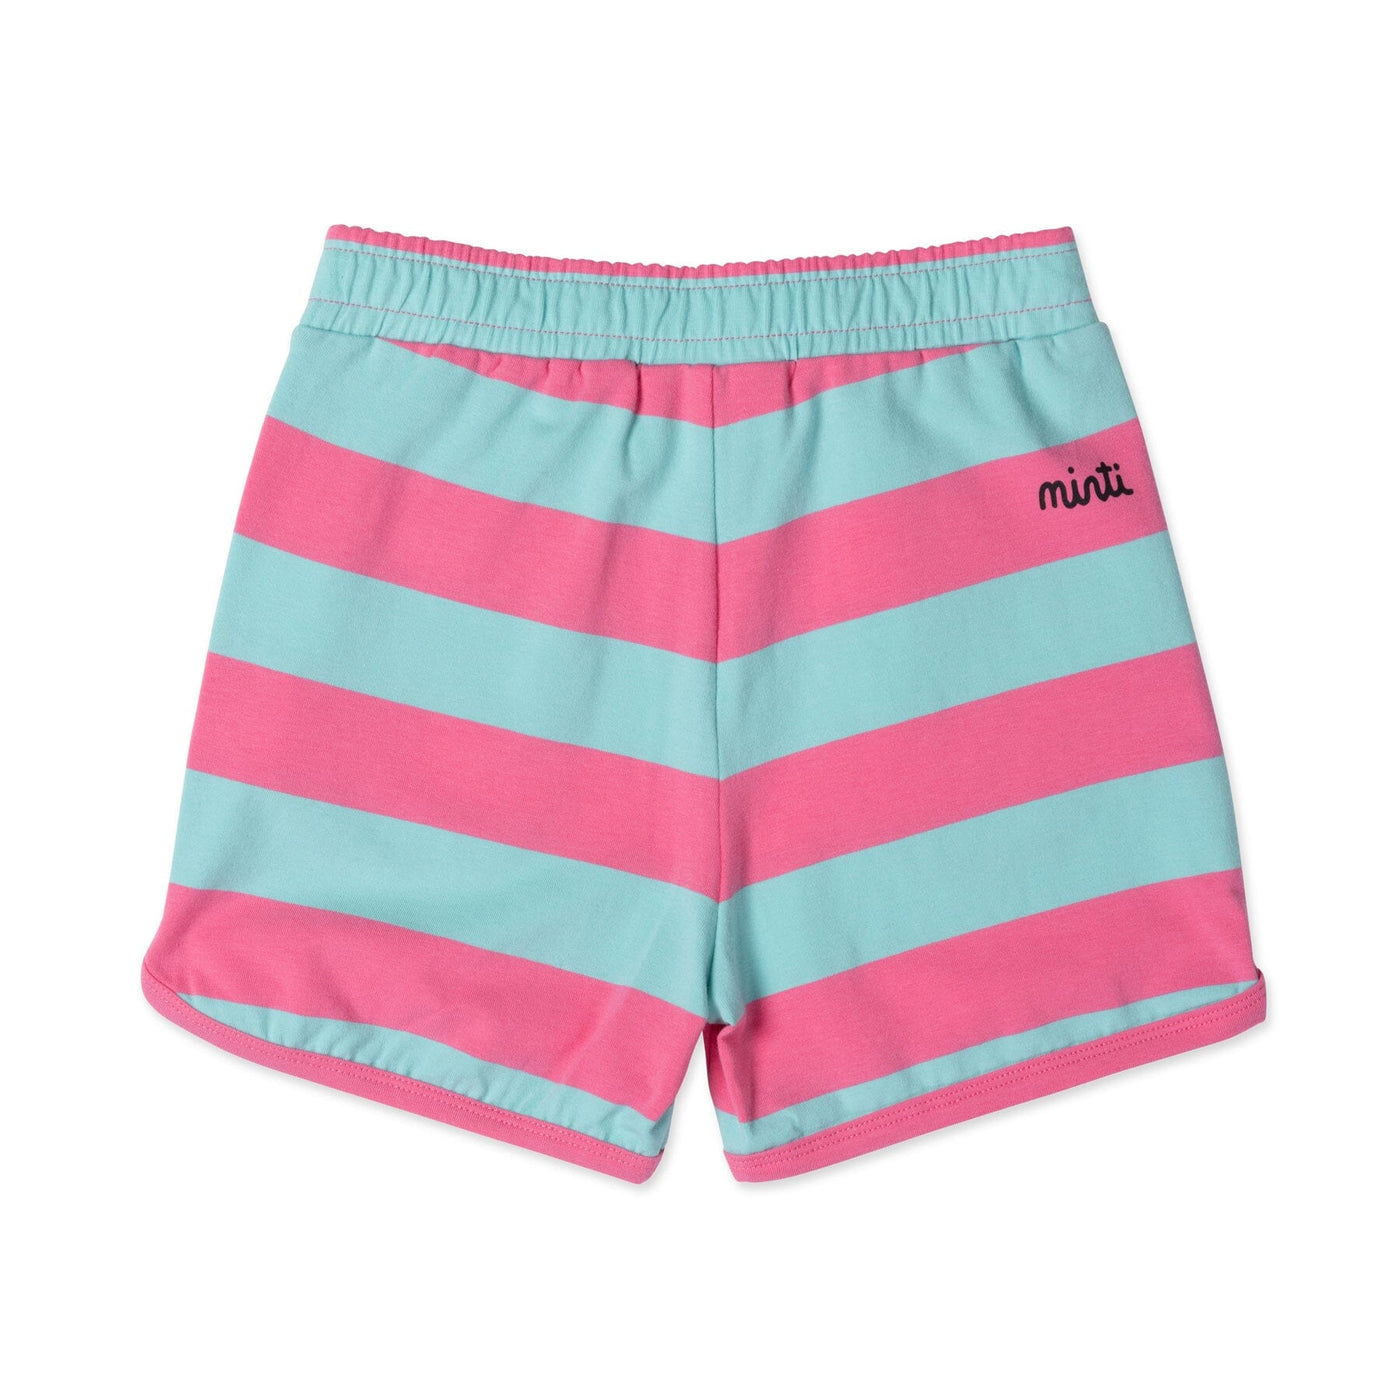 PREORDER Minti Striped Sport Short - Pink/Teal Stripe Shorts Minti 